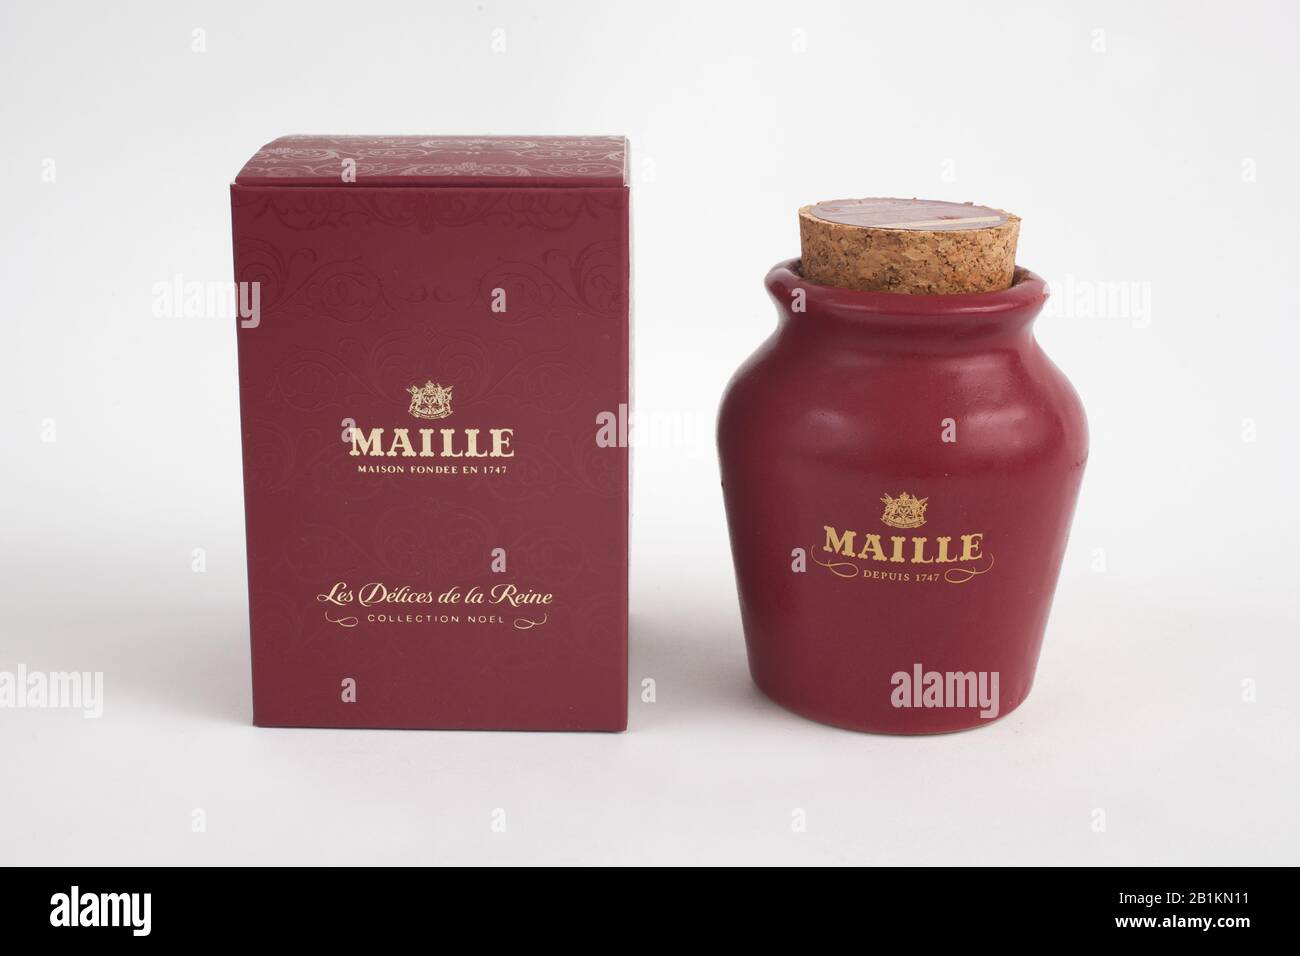 Un pot de moutarde française Melle de leur collection de Noël Banque D'Images